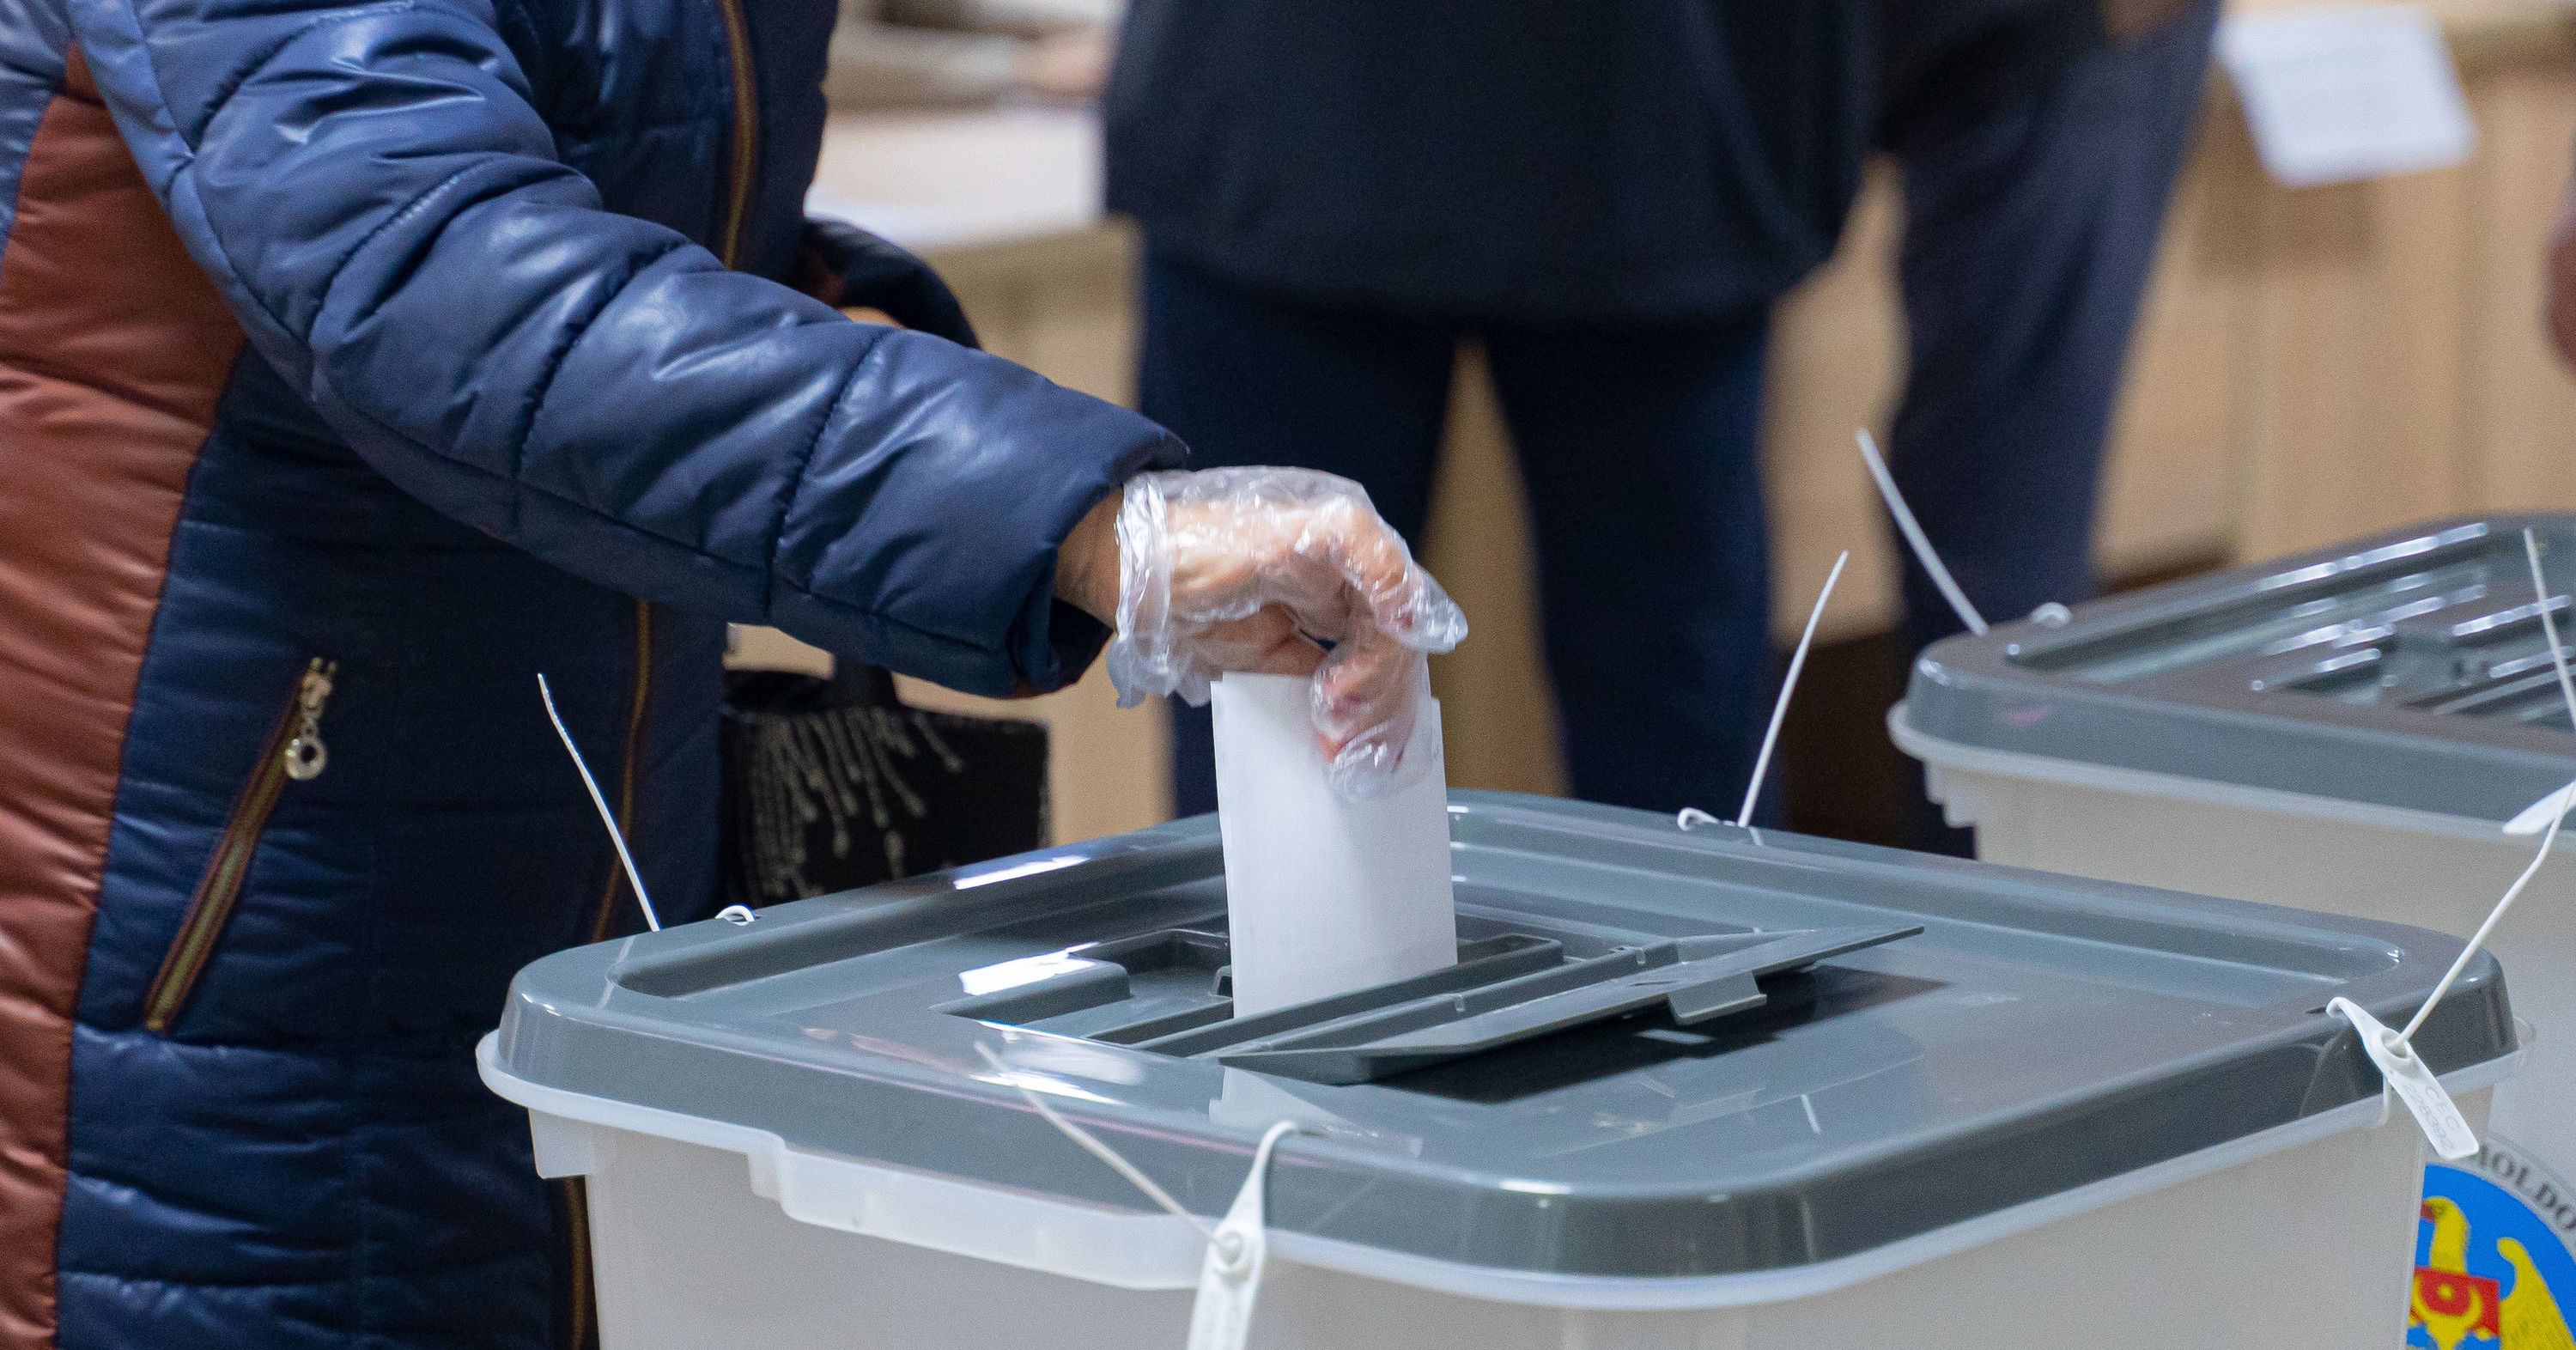 ЦИК аккредитовала более 150 наблюдателей на местных выборах в Молдове. Фото Point.md.